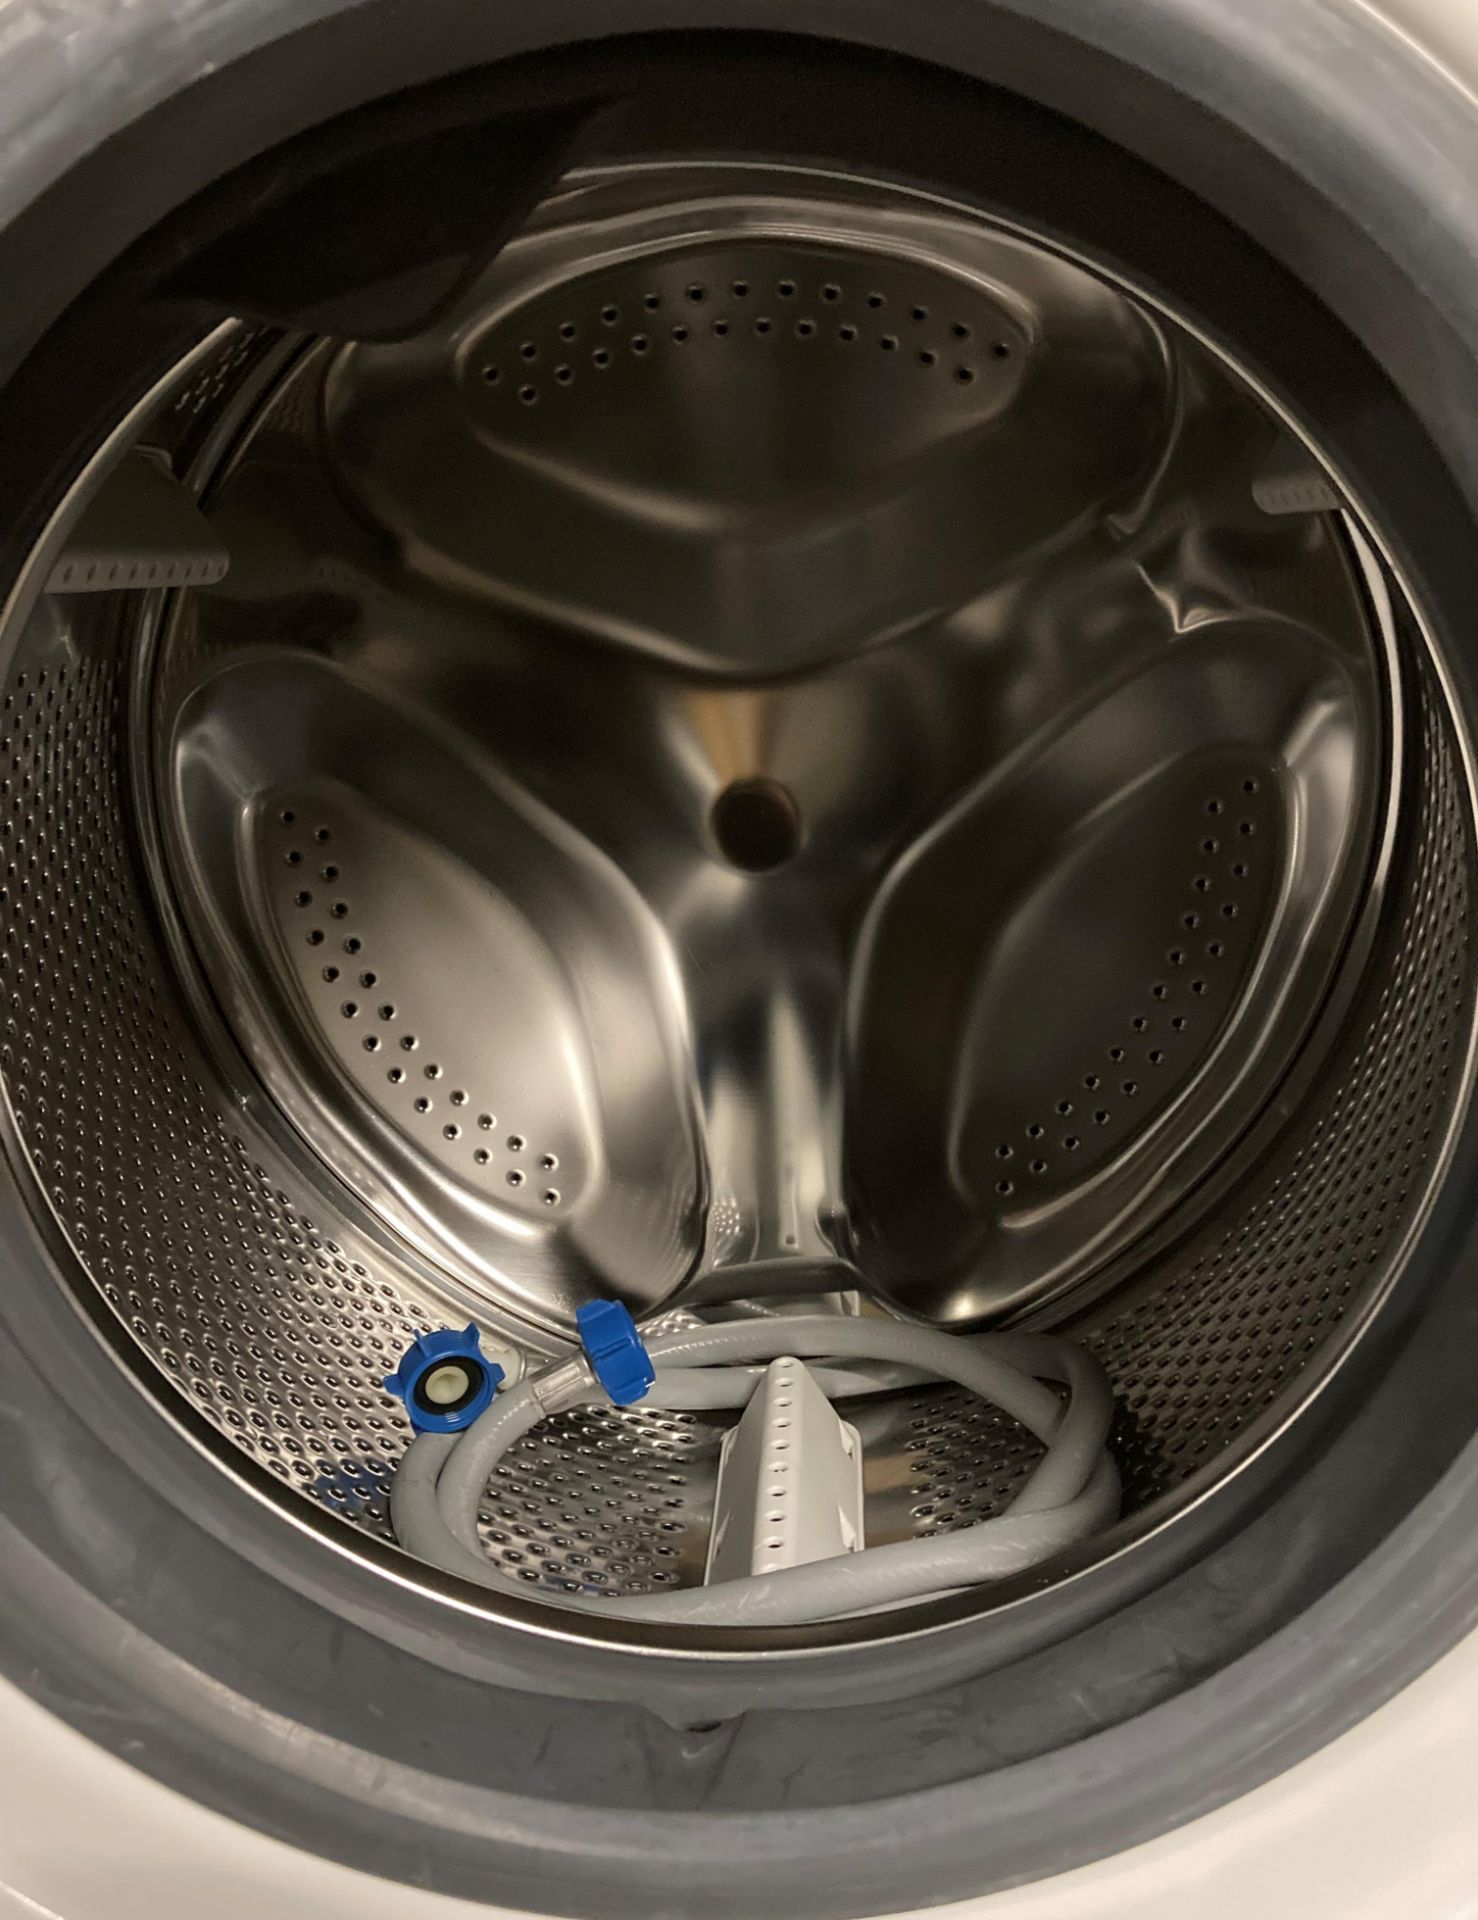 Hitpoint Eco 40-60 front-loading 7kg washing machine (saleroom location: PO) - Image 2 of 2